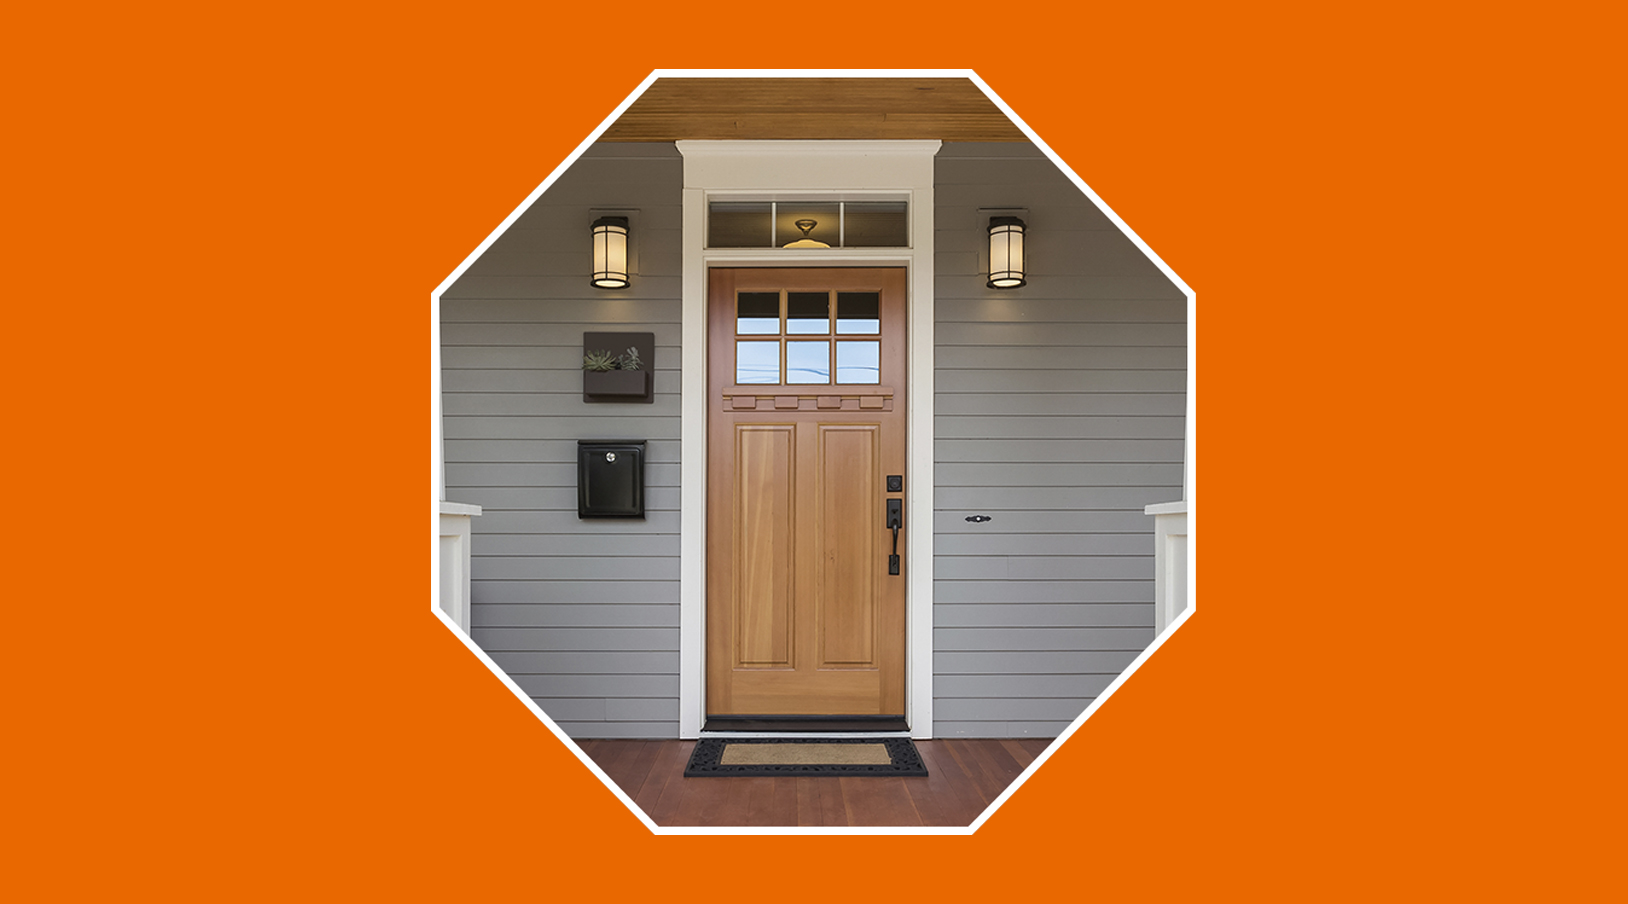 Mejoras de seguridad necesarias en la puerta principal de la casa •  PuntoSeguro Blog